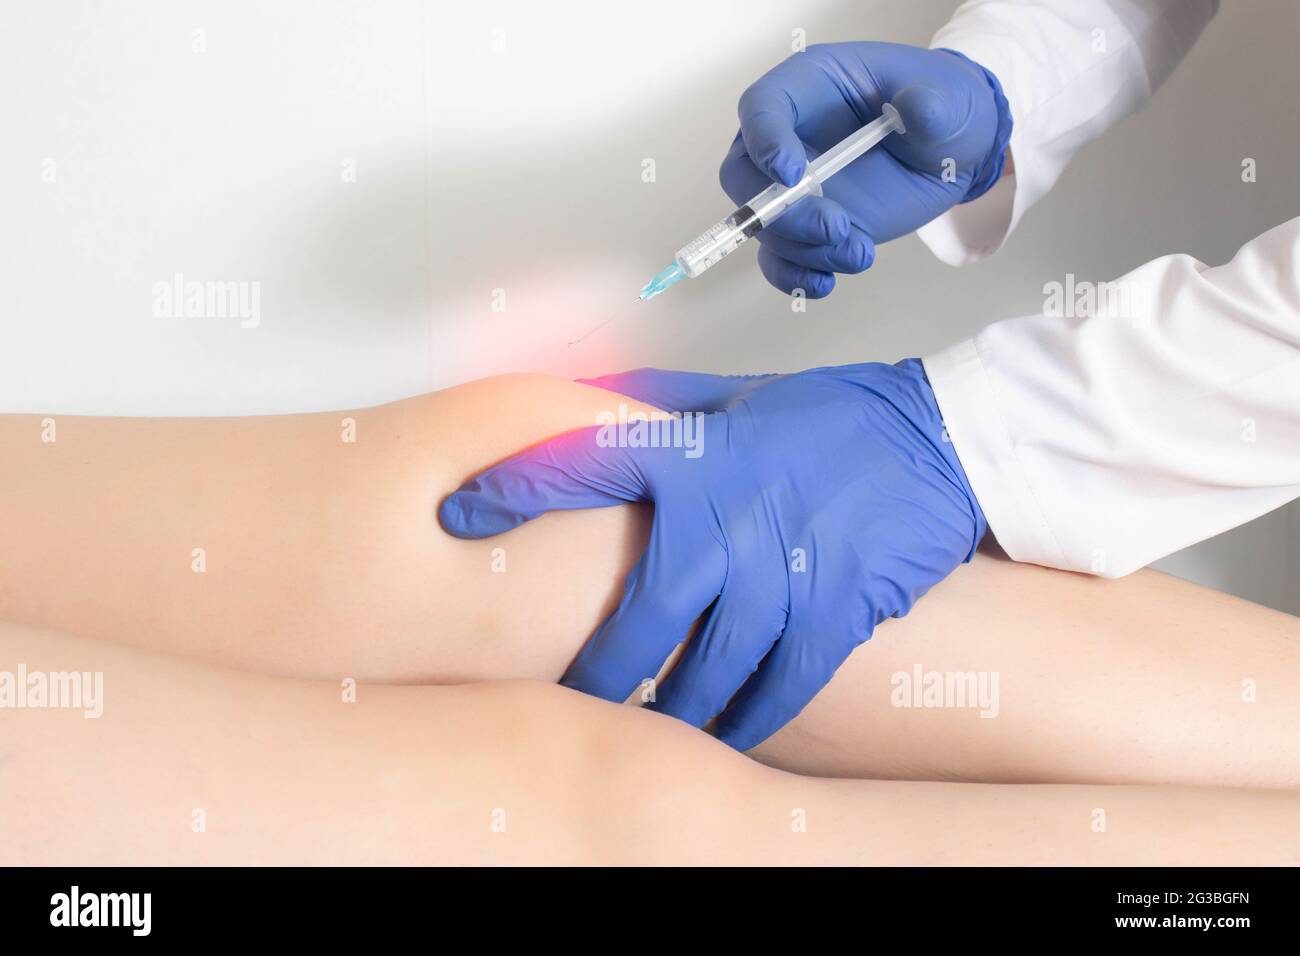 Der Arzt spritzt eine Ozon-Sauerstoff-Mischung in das Kniegelenk des  Patienten, um Muskelkrämpfe und Entzündungen zu lindern. Ozontherapie,  Textbereich kopieren Stockfotografie - Alamy